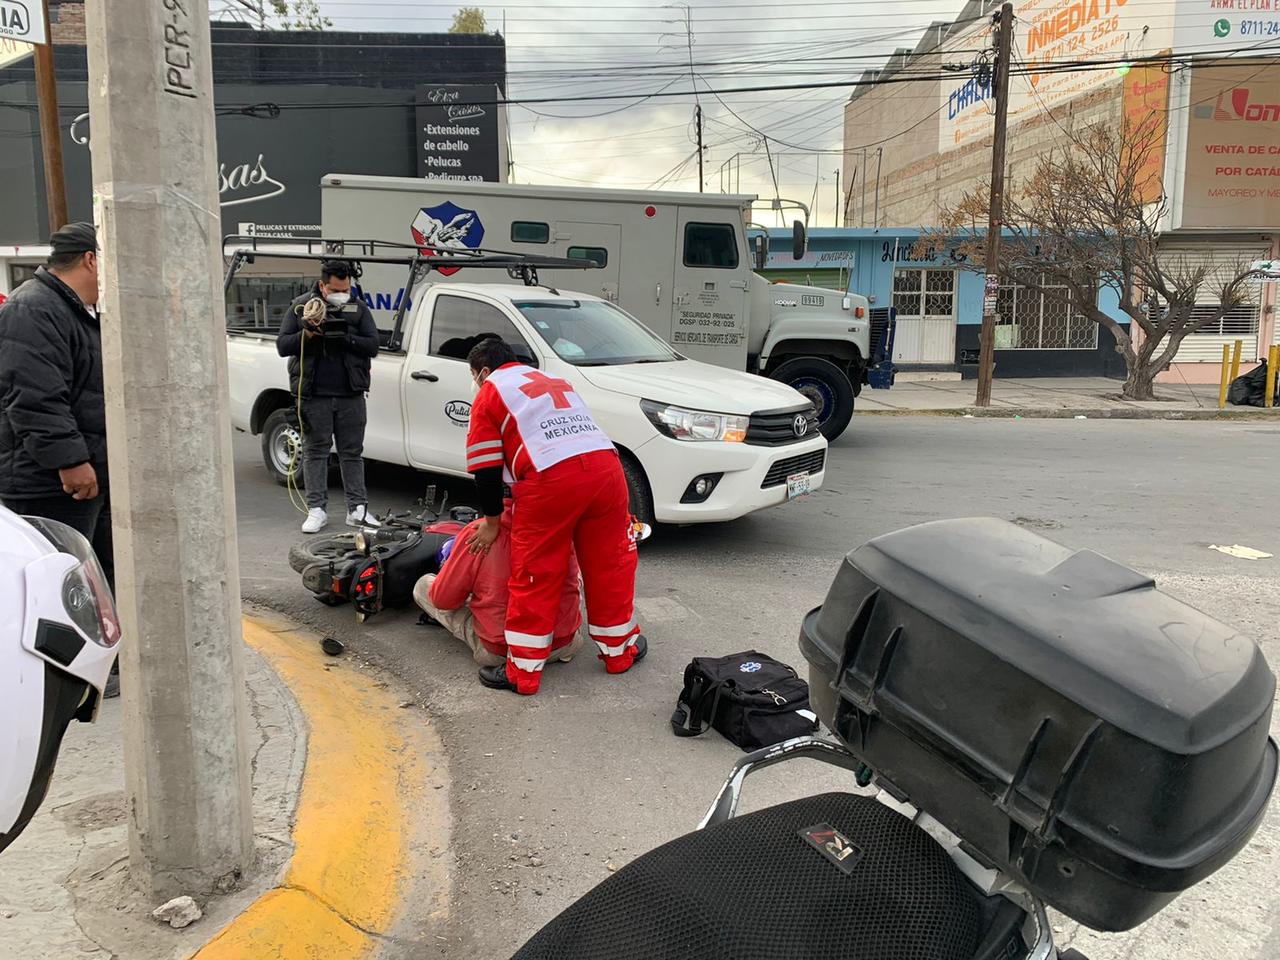 Al llegar al cruce con el bulevar Independencia, el joven realizó una maniobra de cambio de carril y le cortó la circulación a una motocicleta de la marca Kurazai, de color negro con rojo. (EL SIGLO DE TORREÓN) 